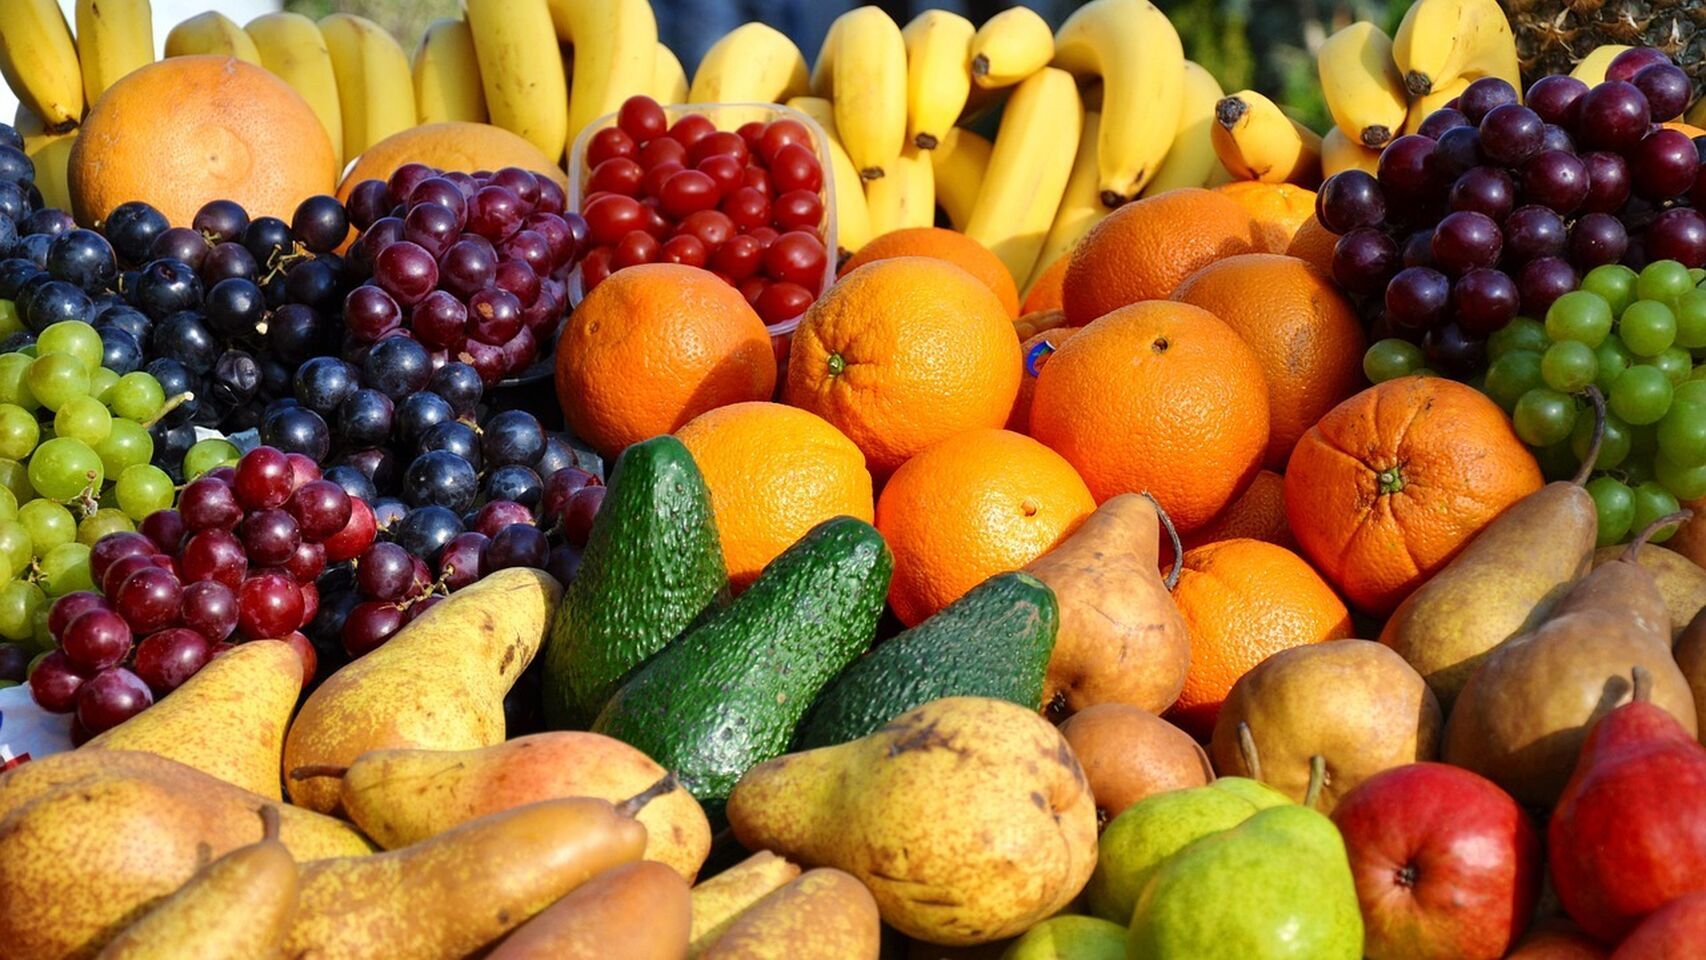 Muchas de las frutas con menos calorías no tienen porcentaje de grasa